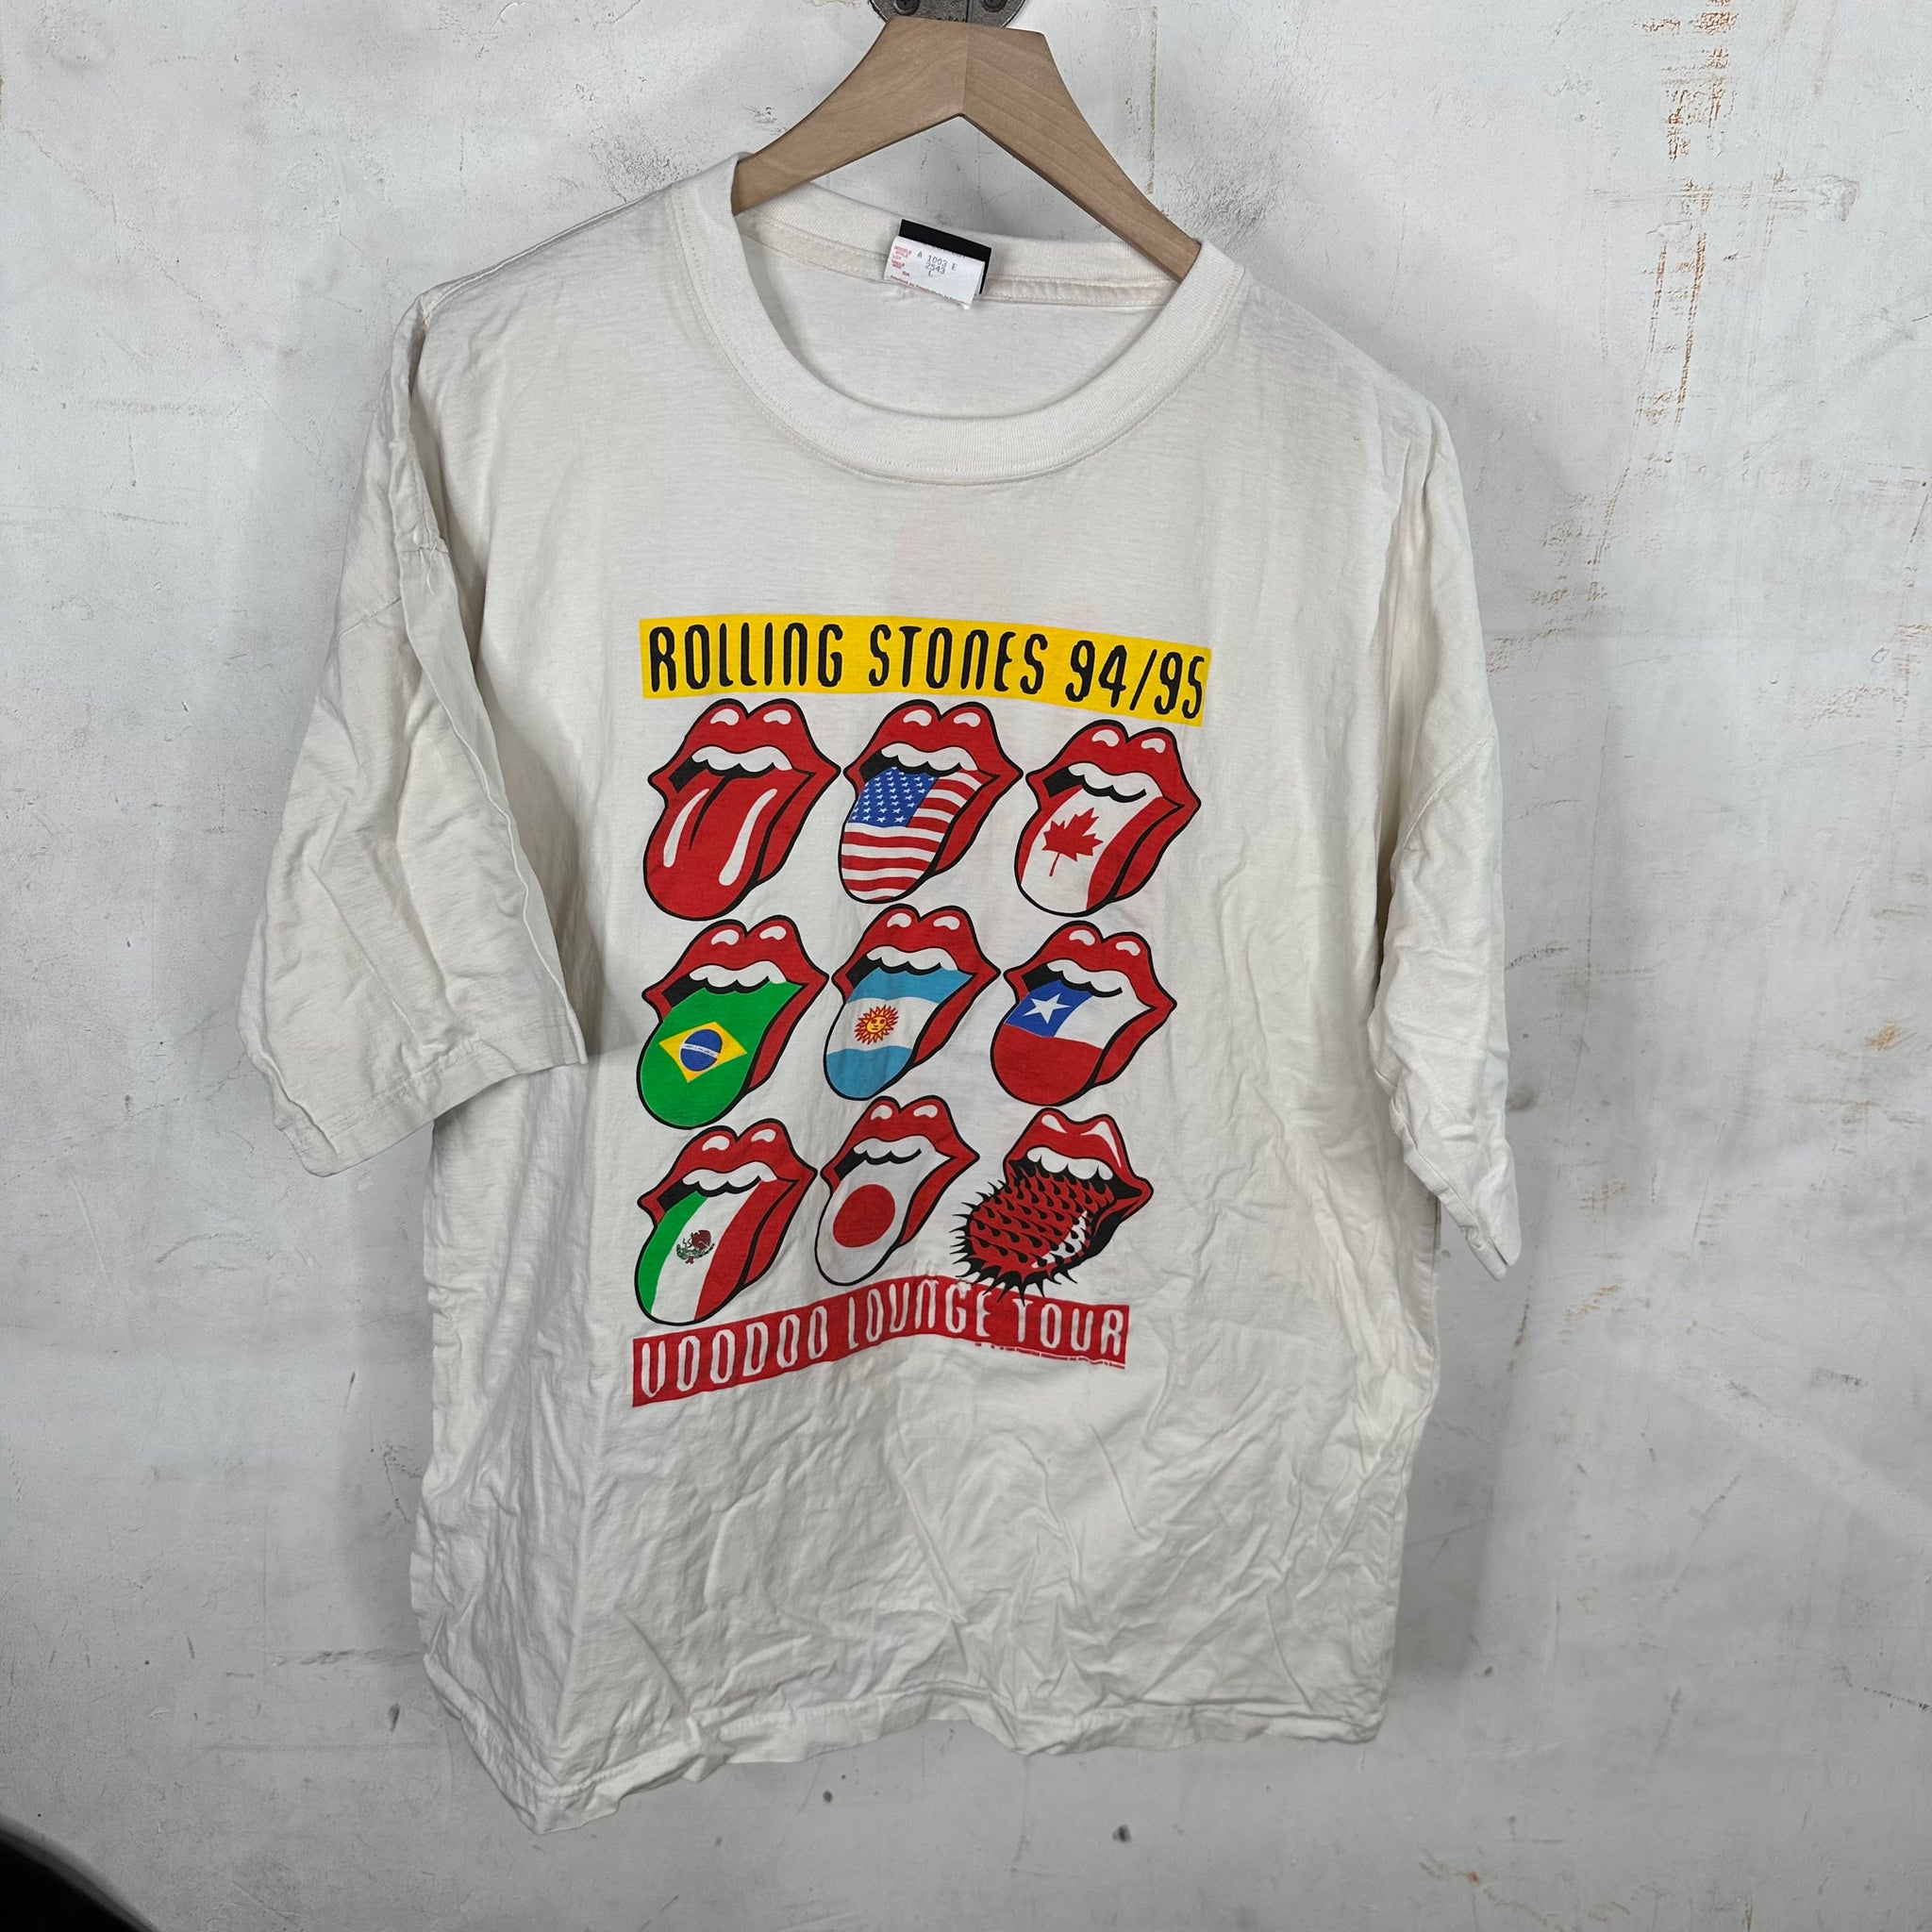 Vintage Rolling Stones 94/95 Tour T-Shirt